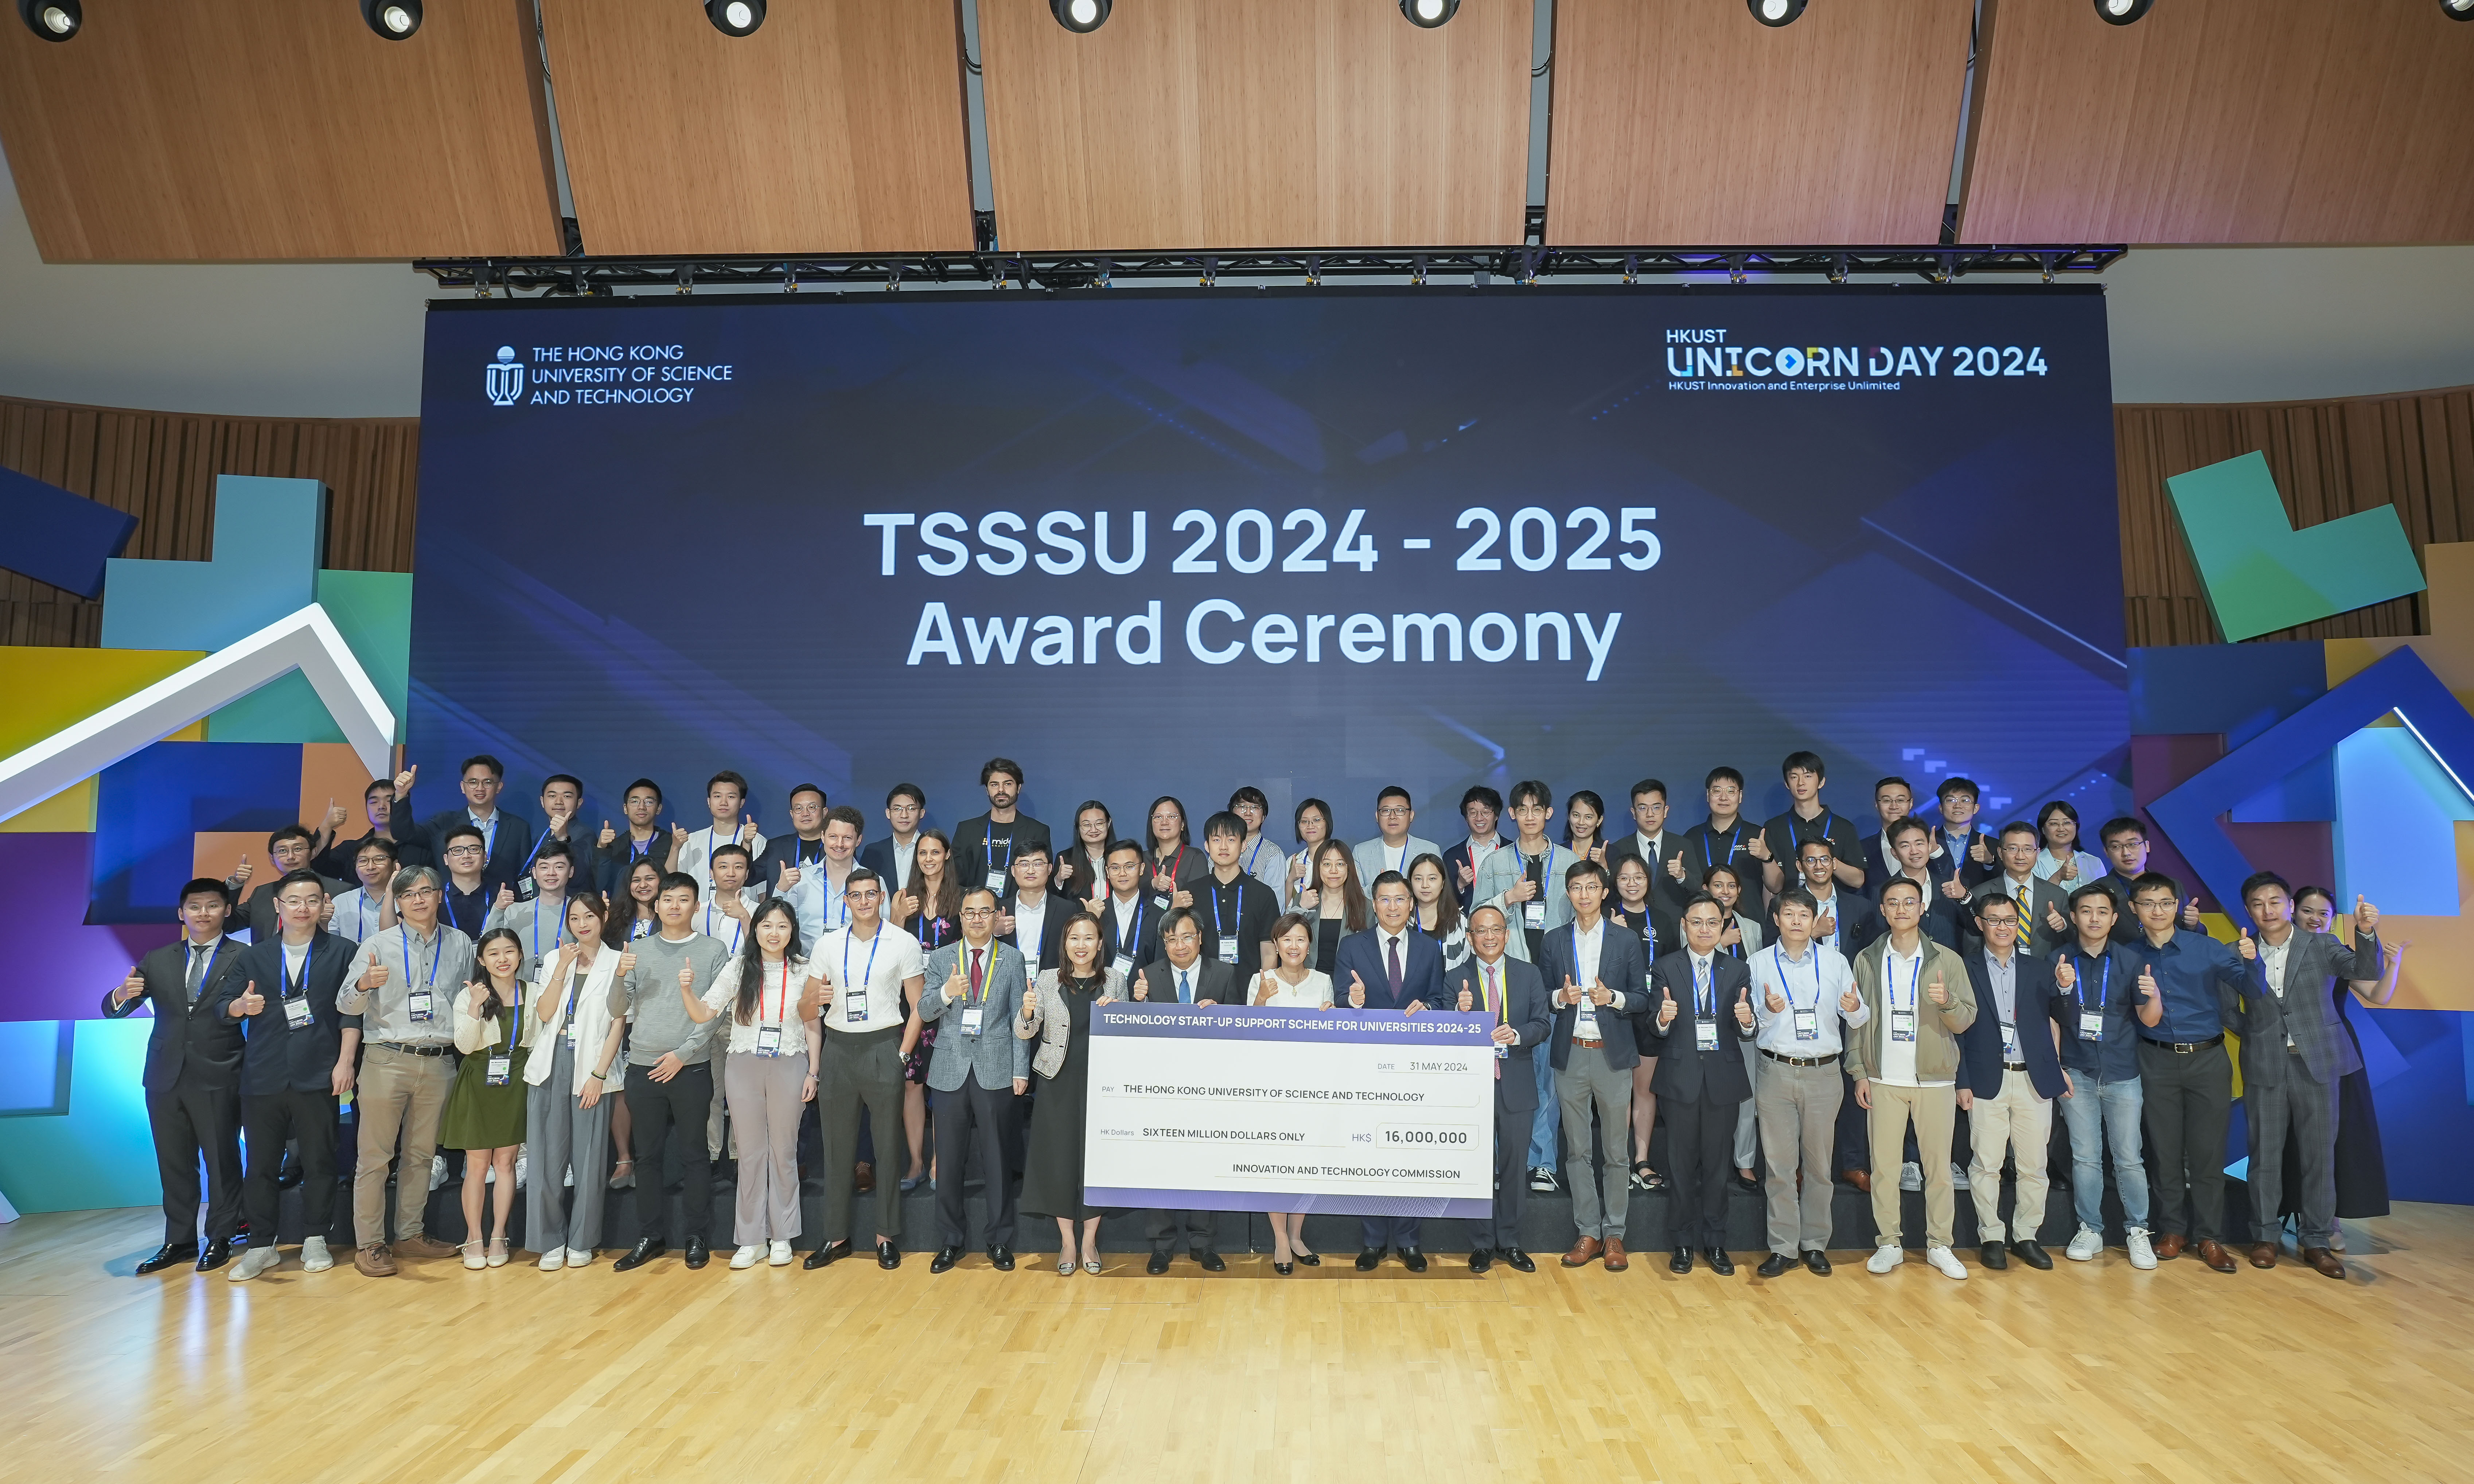 34隊入選最新一輪「大學科技初創企業資助計劃」(TSSSU)的項目亦於活動上獲嘉許。